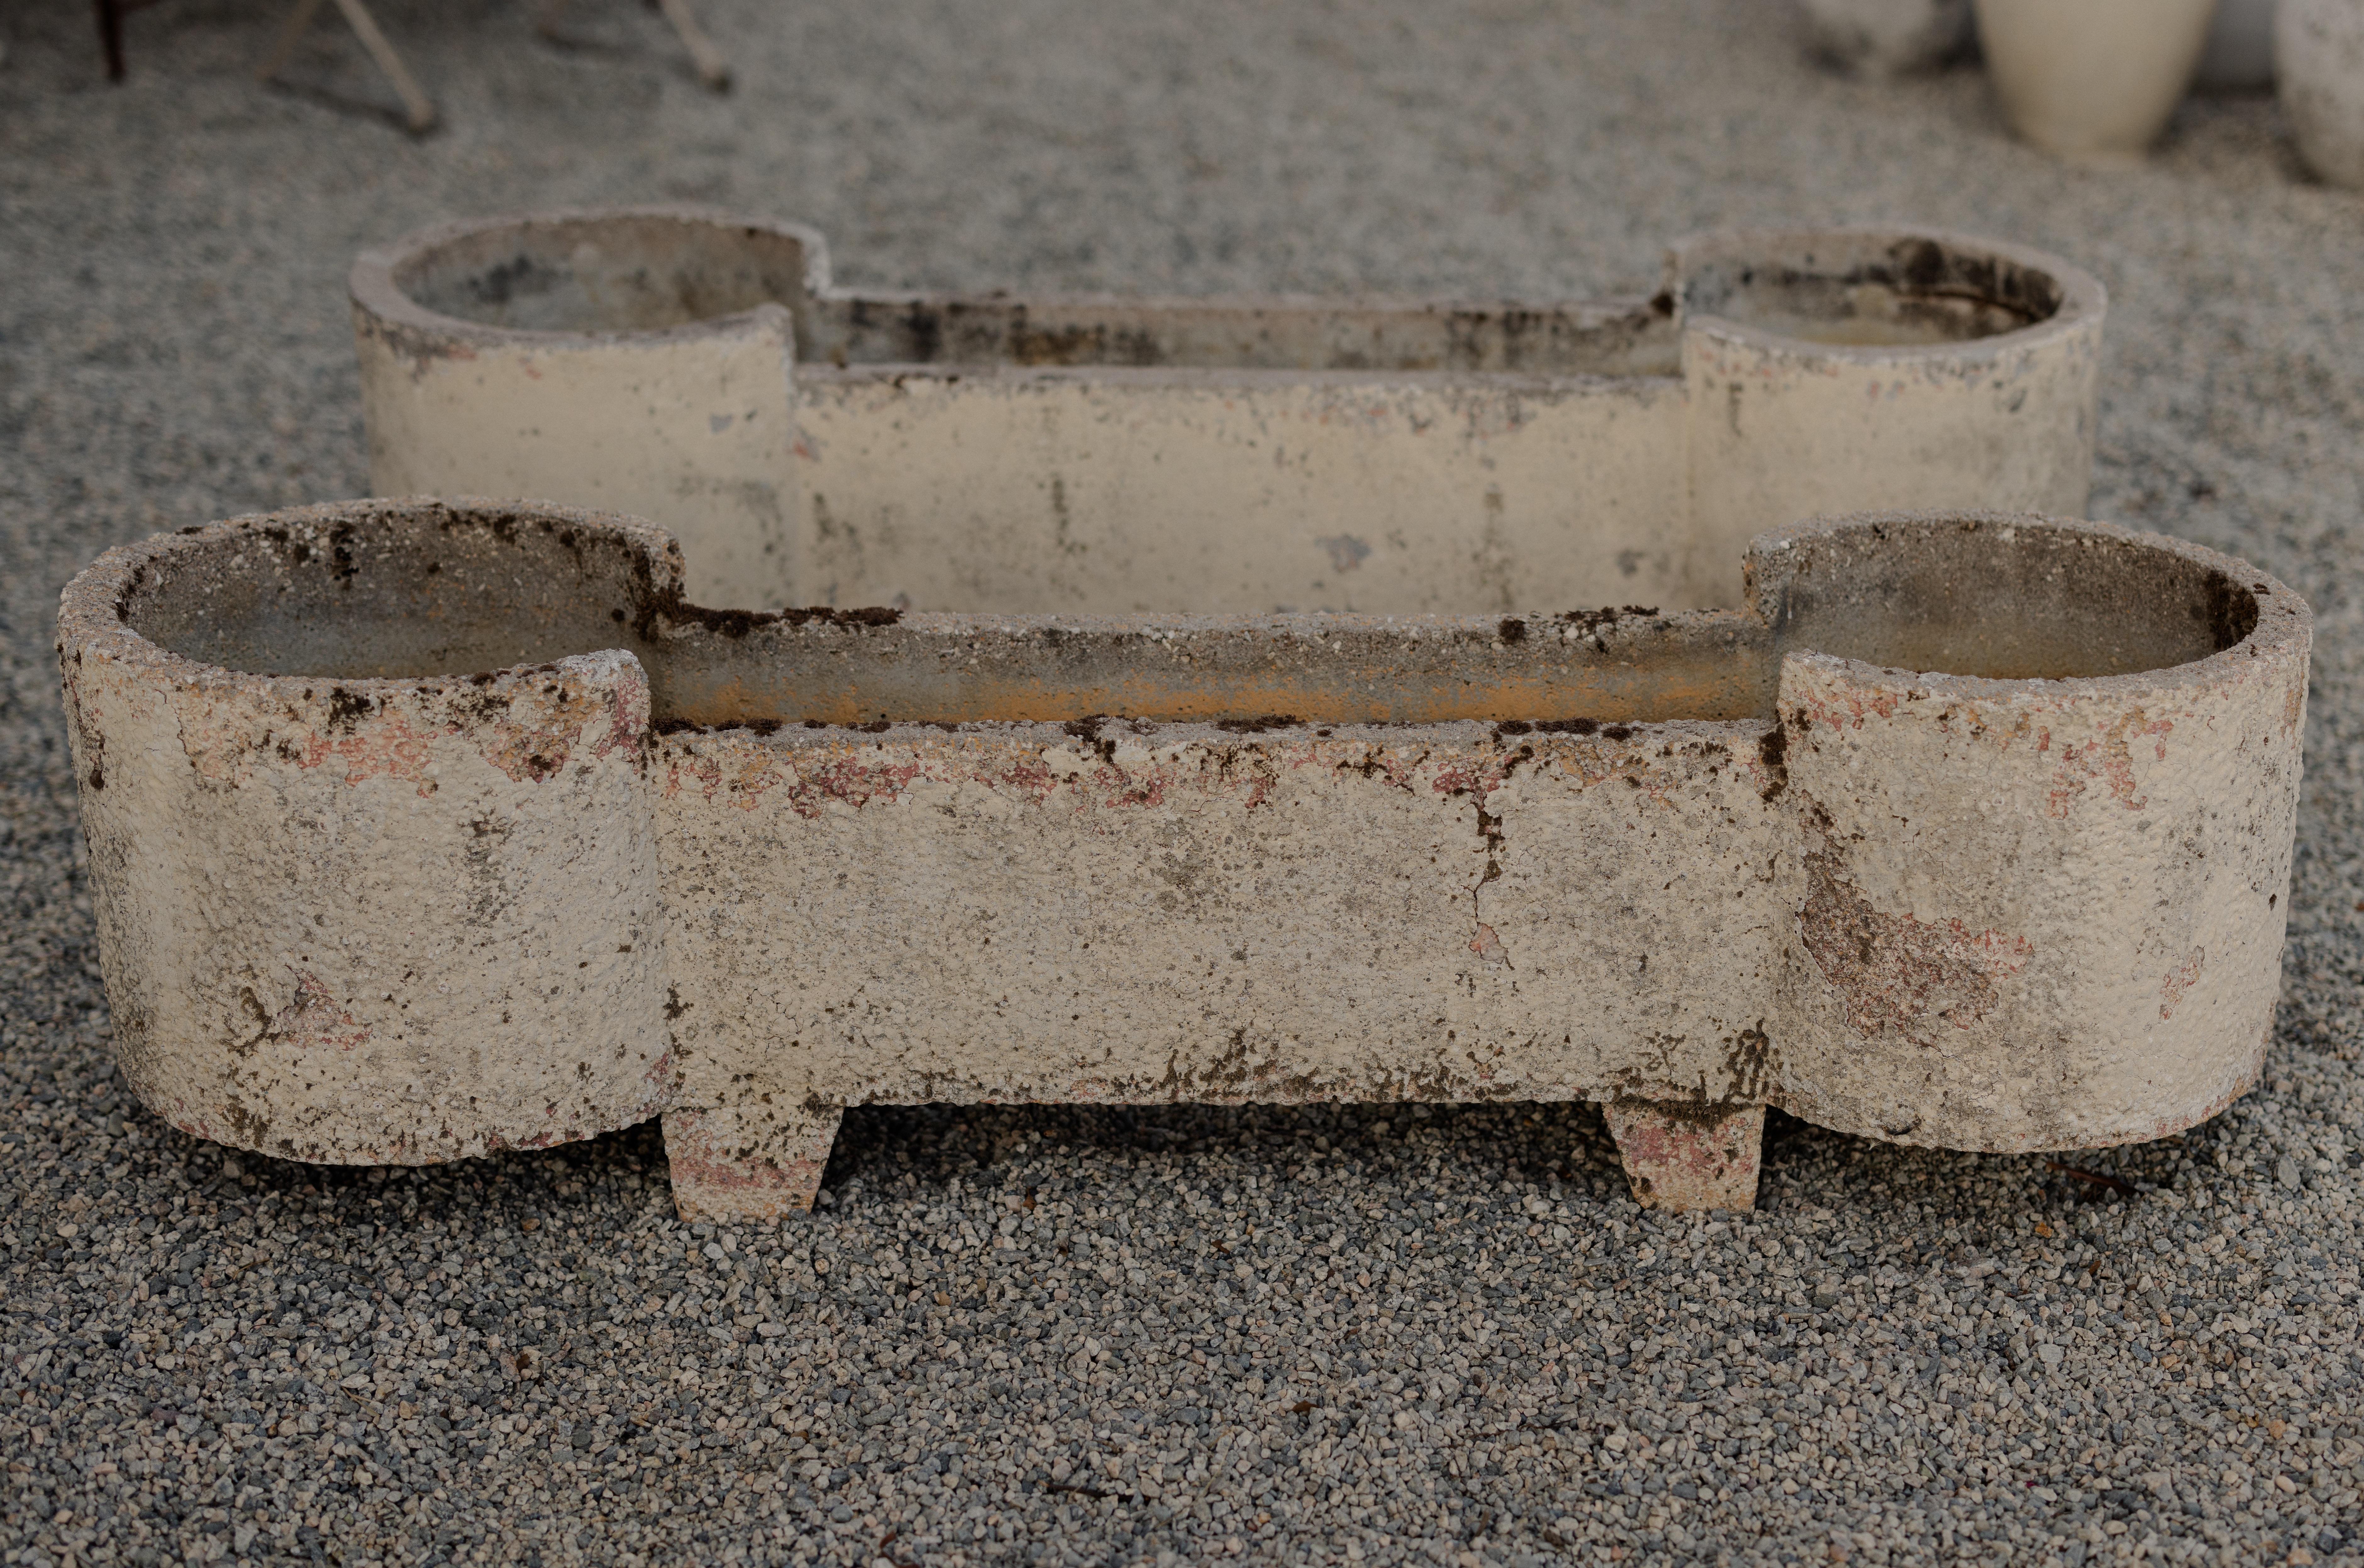 Vintage Concrete Dog Bone Planters

H 16.5